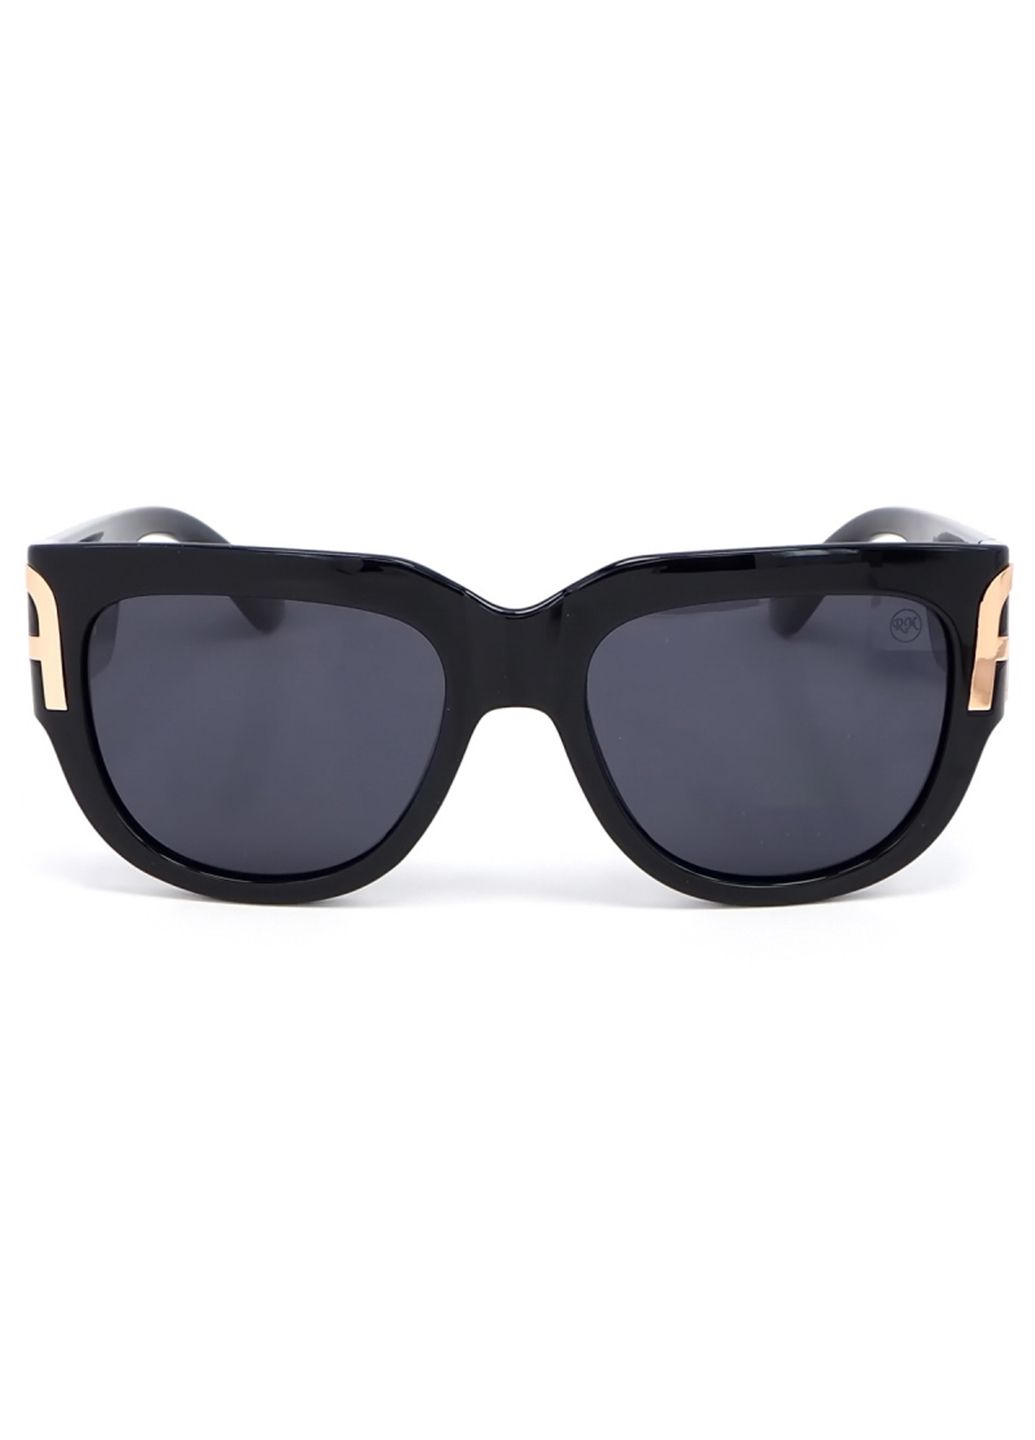 Купить Женские солнцезащитные очки Roberto с поляризацией RM8444 113019 в интернет-магазине